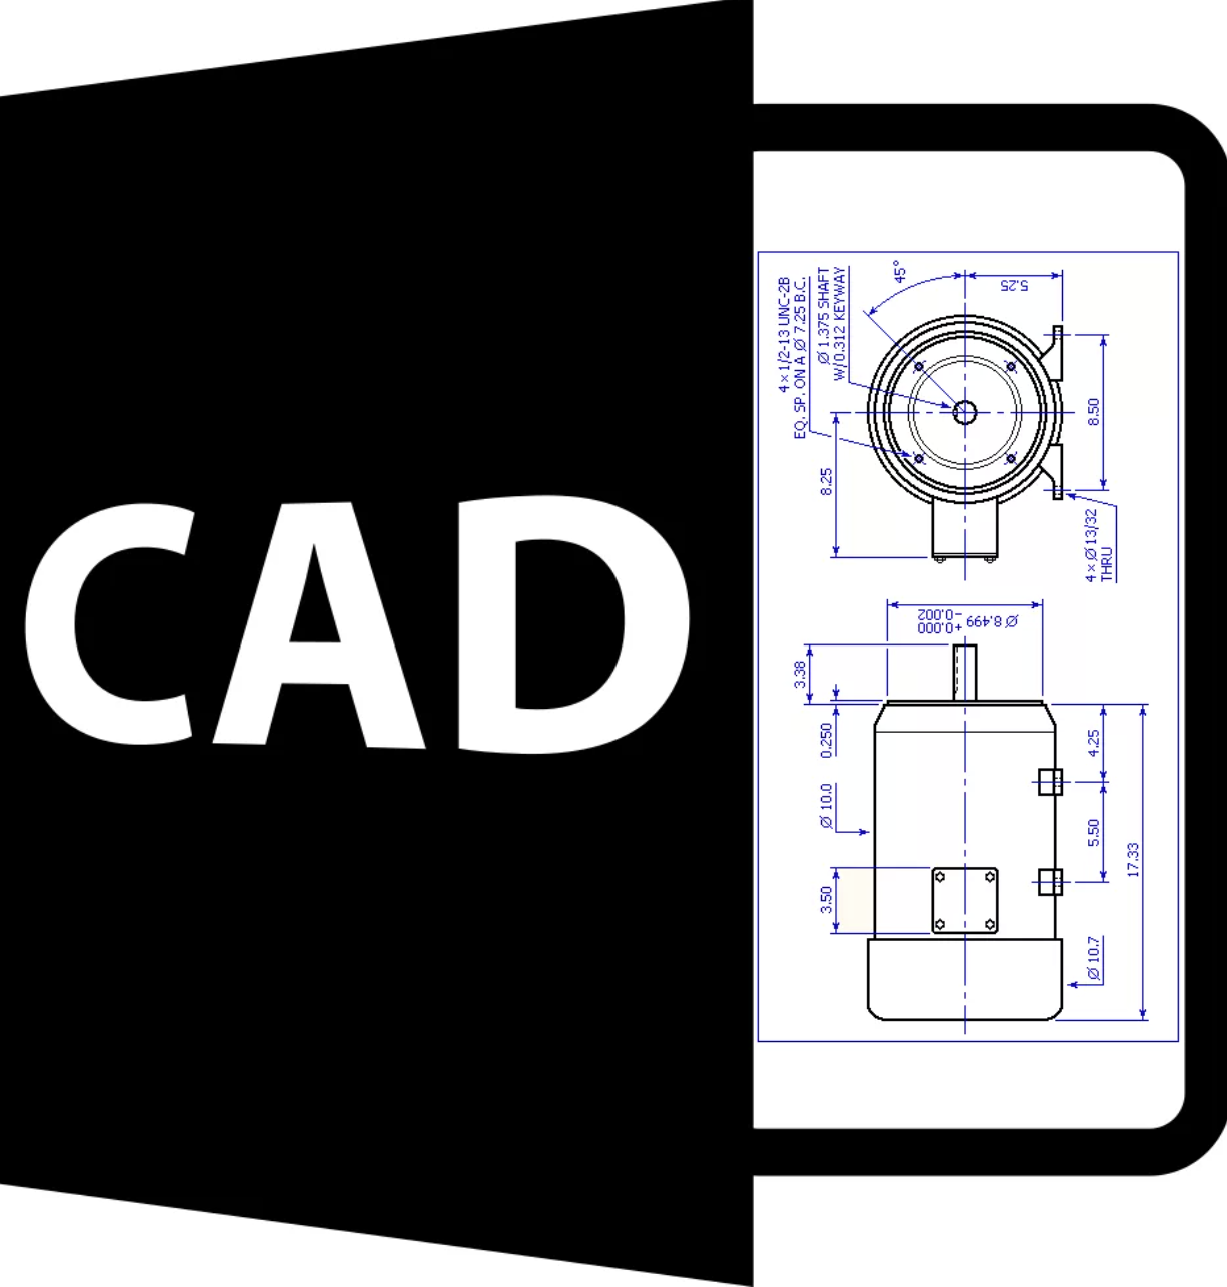 САПР - Система автоматизированного проектирования - CAD - Computer-Aided Design - Цифровое проектирование